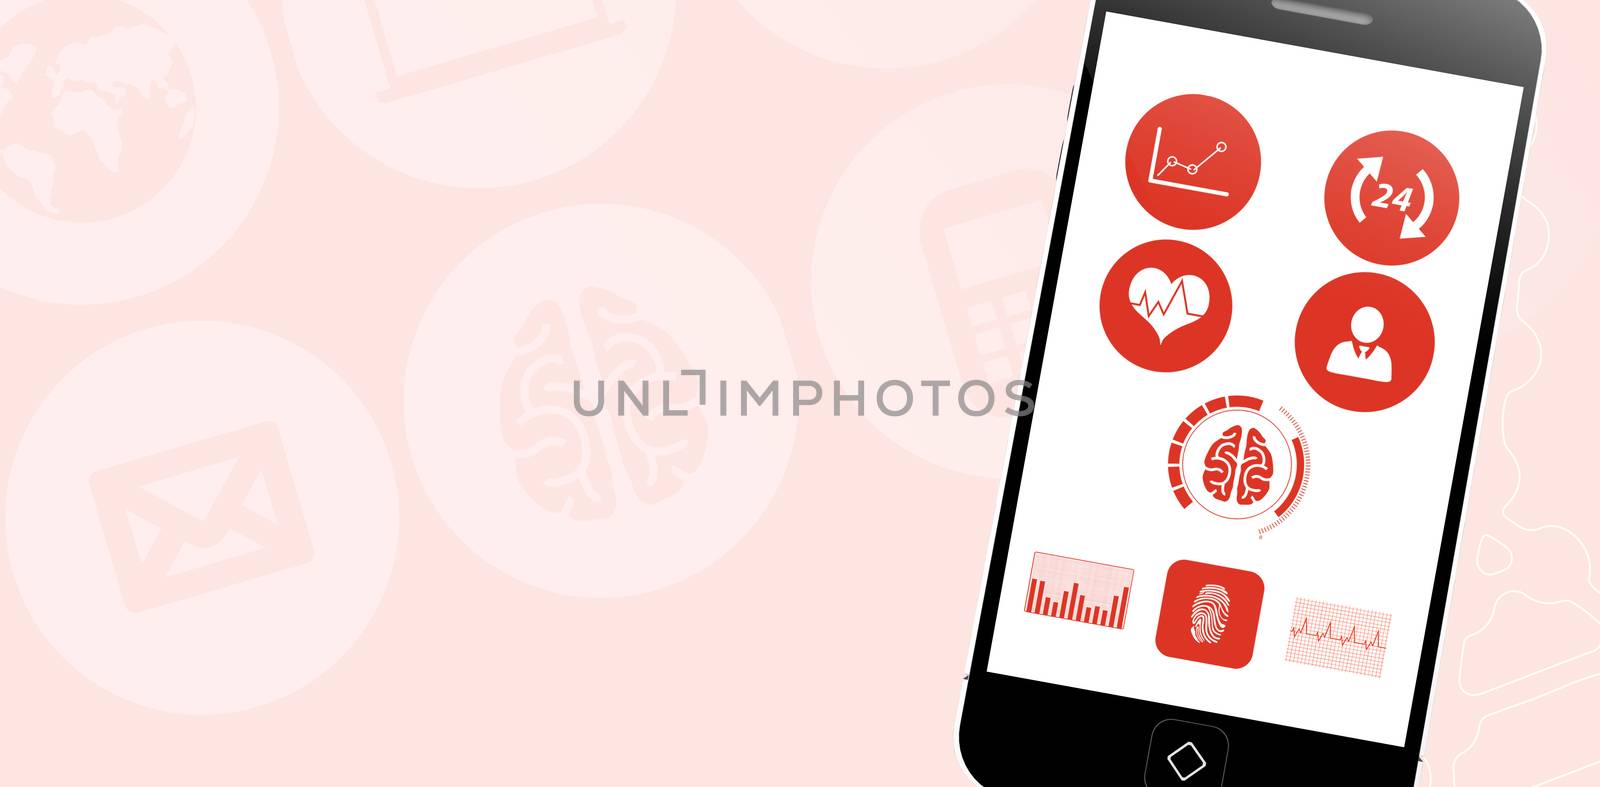 Medical app against pink background